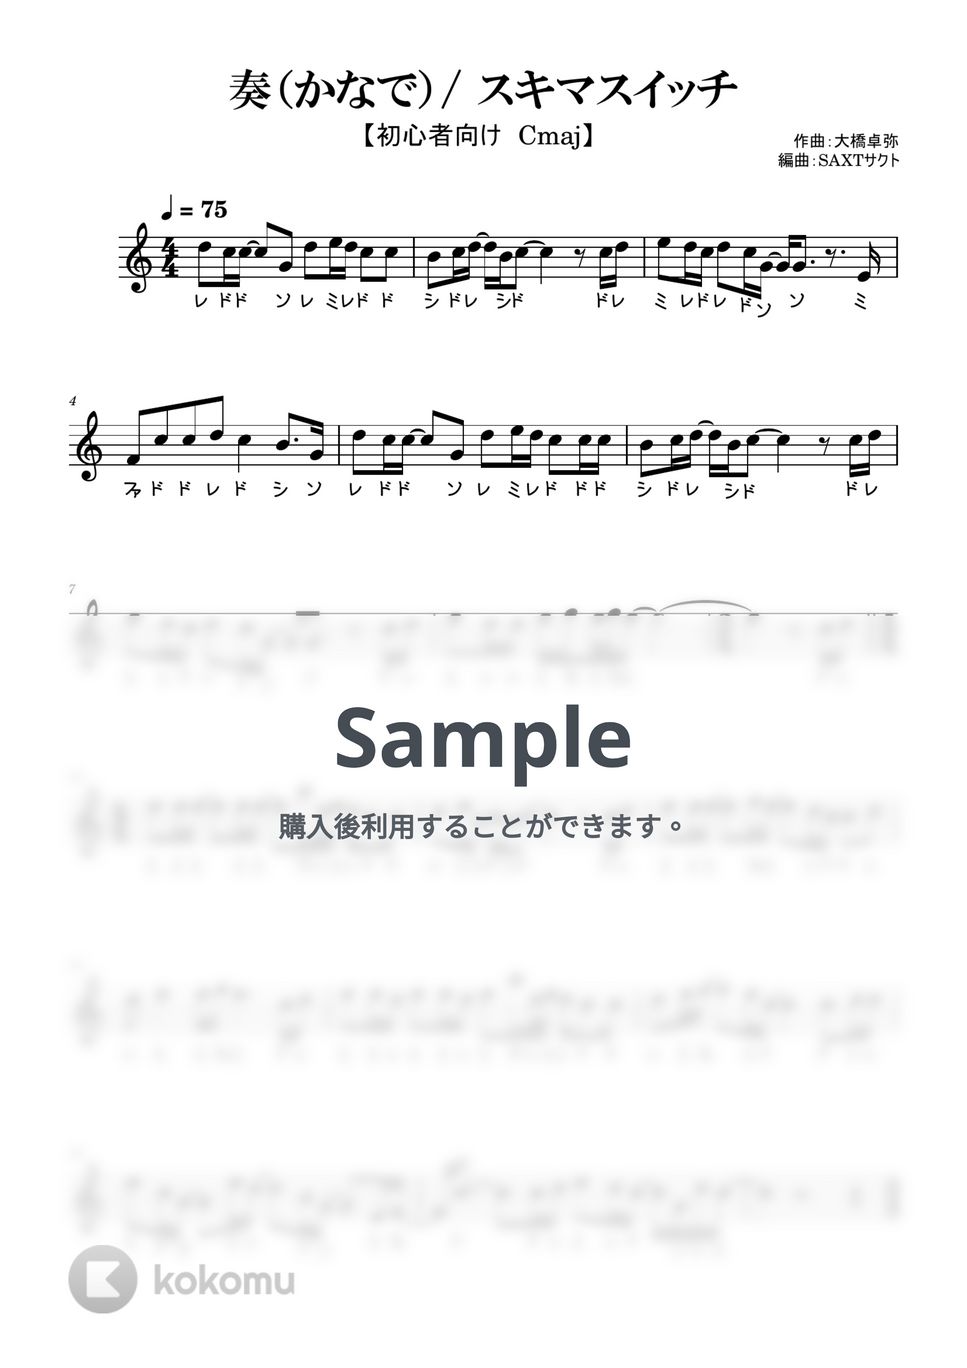 スキマスイッチ - 奏（かなで） (めちゃラク譜) by SAXT